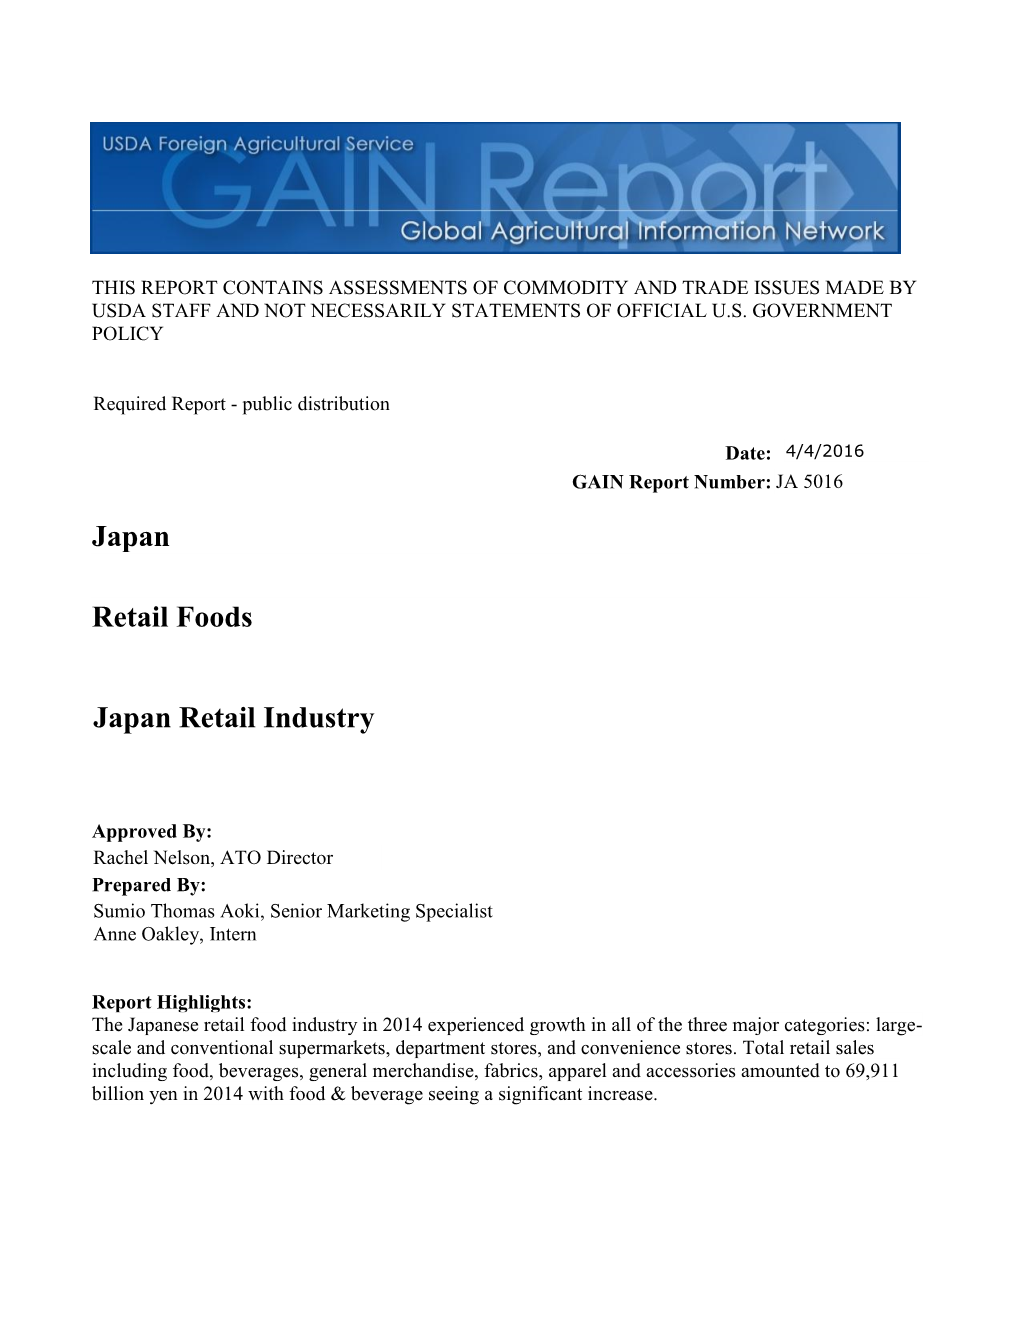 Japan Retail Industry Retail Foods Japan